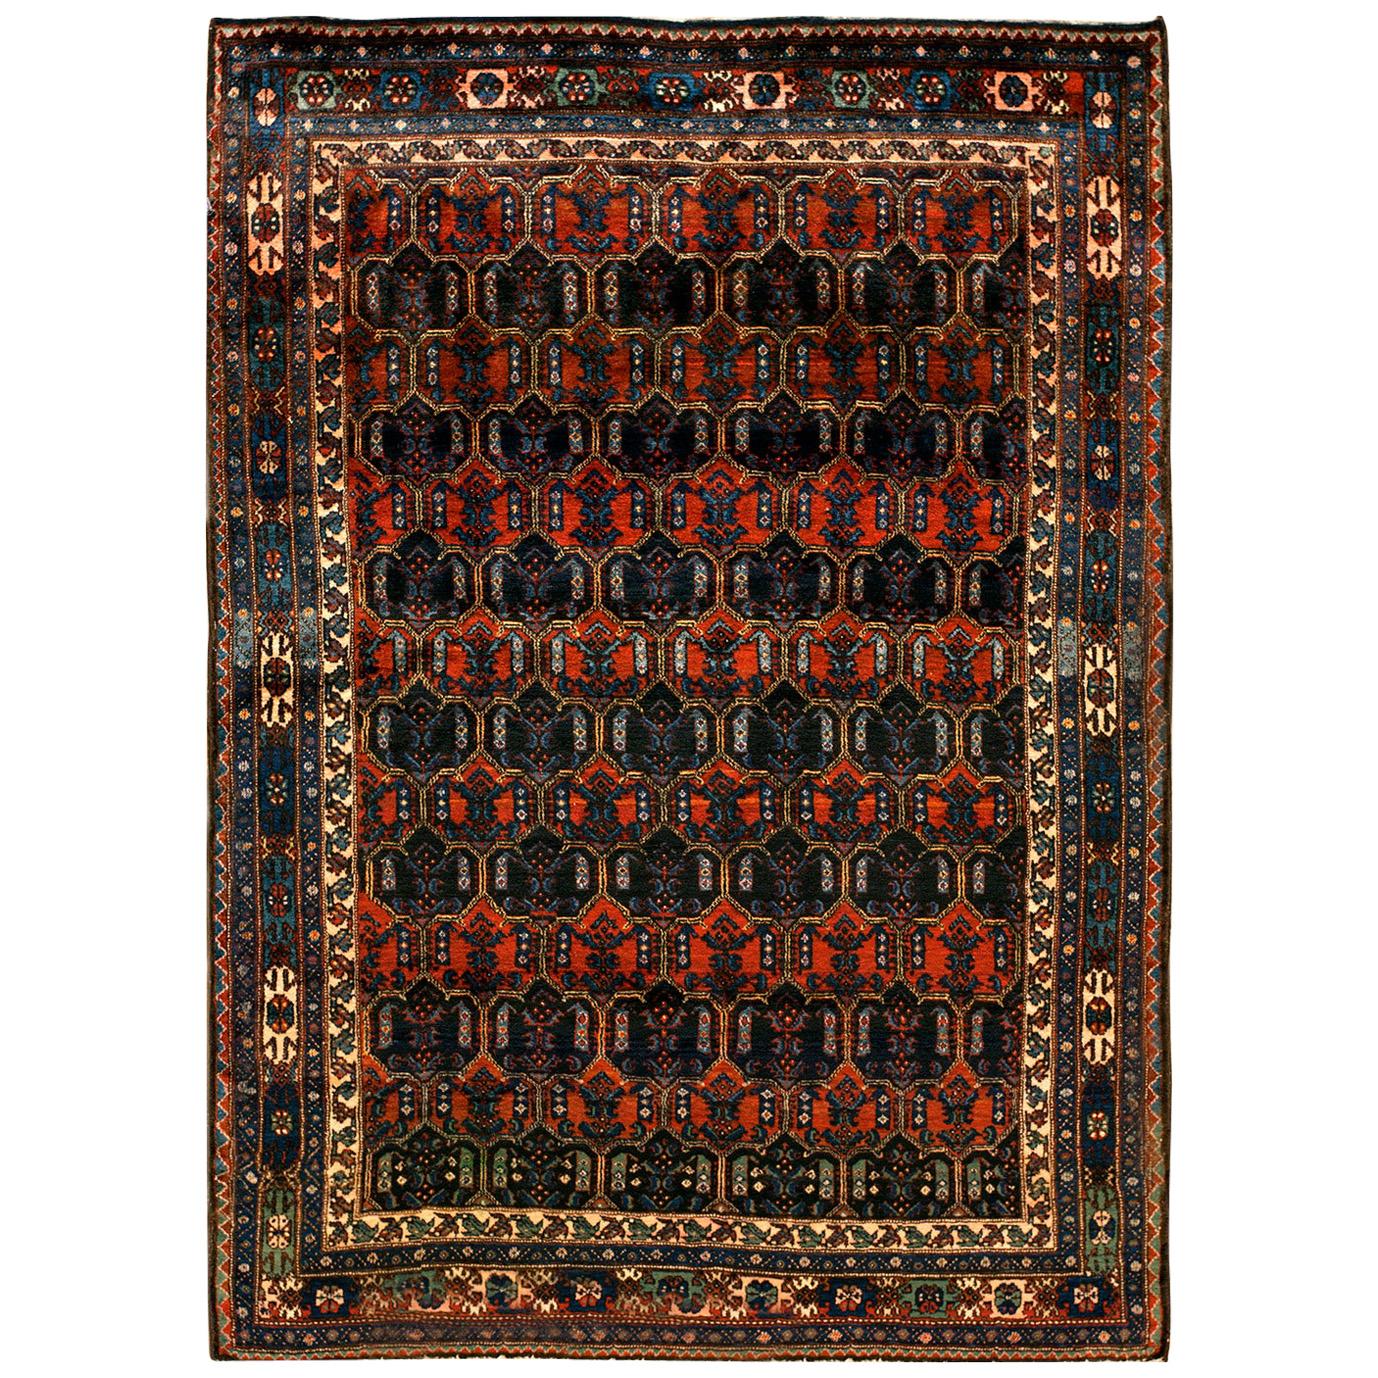 Tapis persan Malayer du début du 20ème siècle ( 4'11" x 6'10" - 150 x 208 )